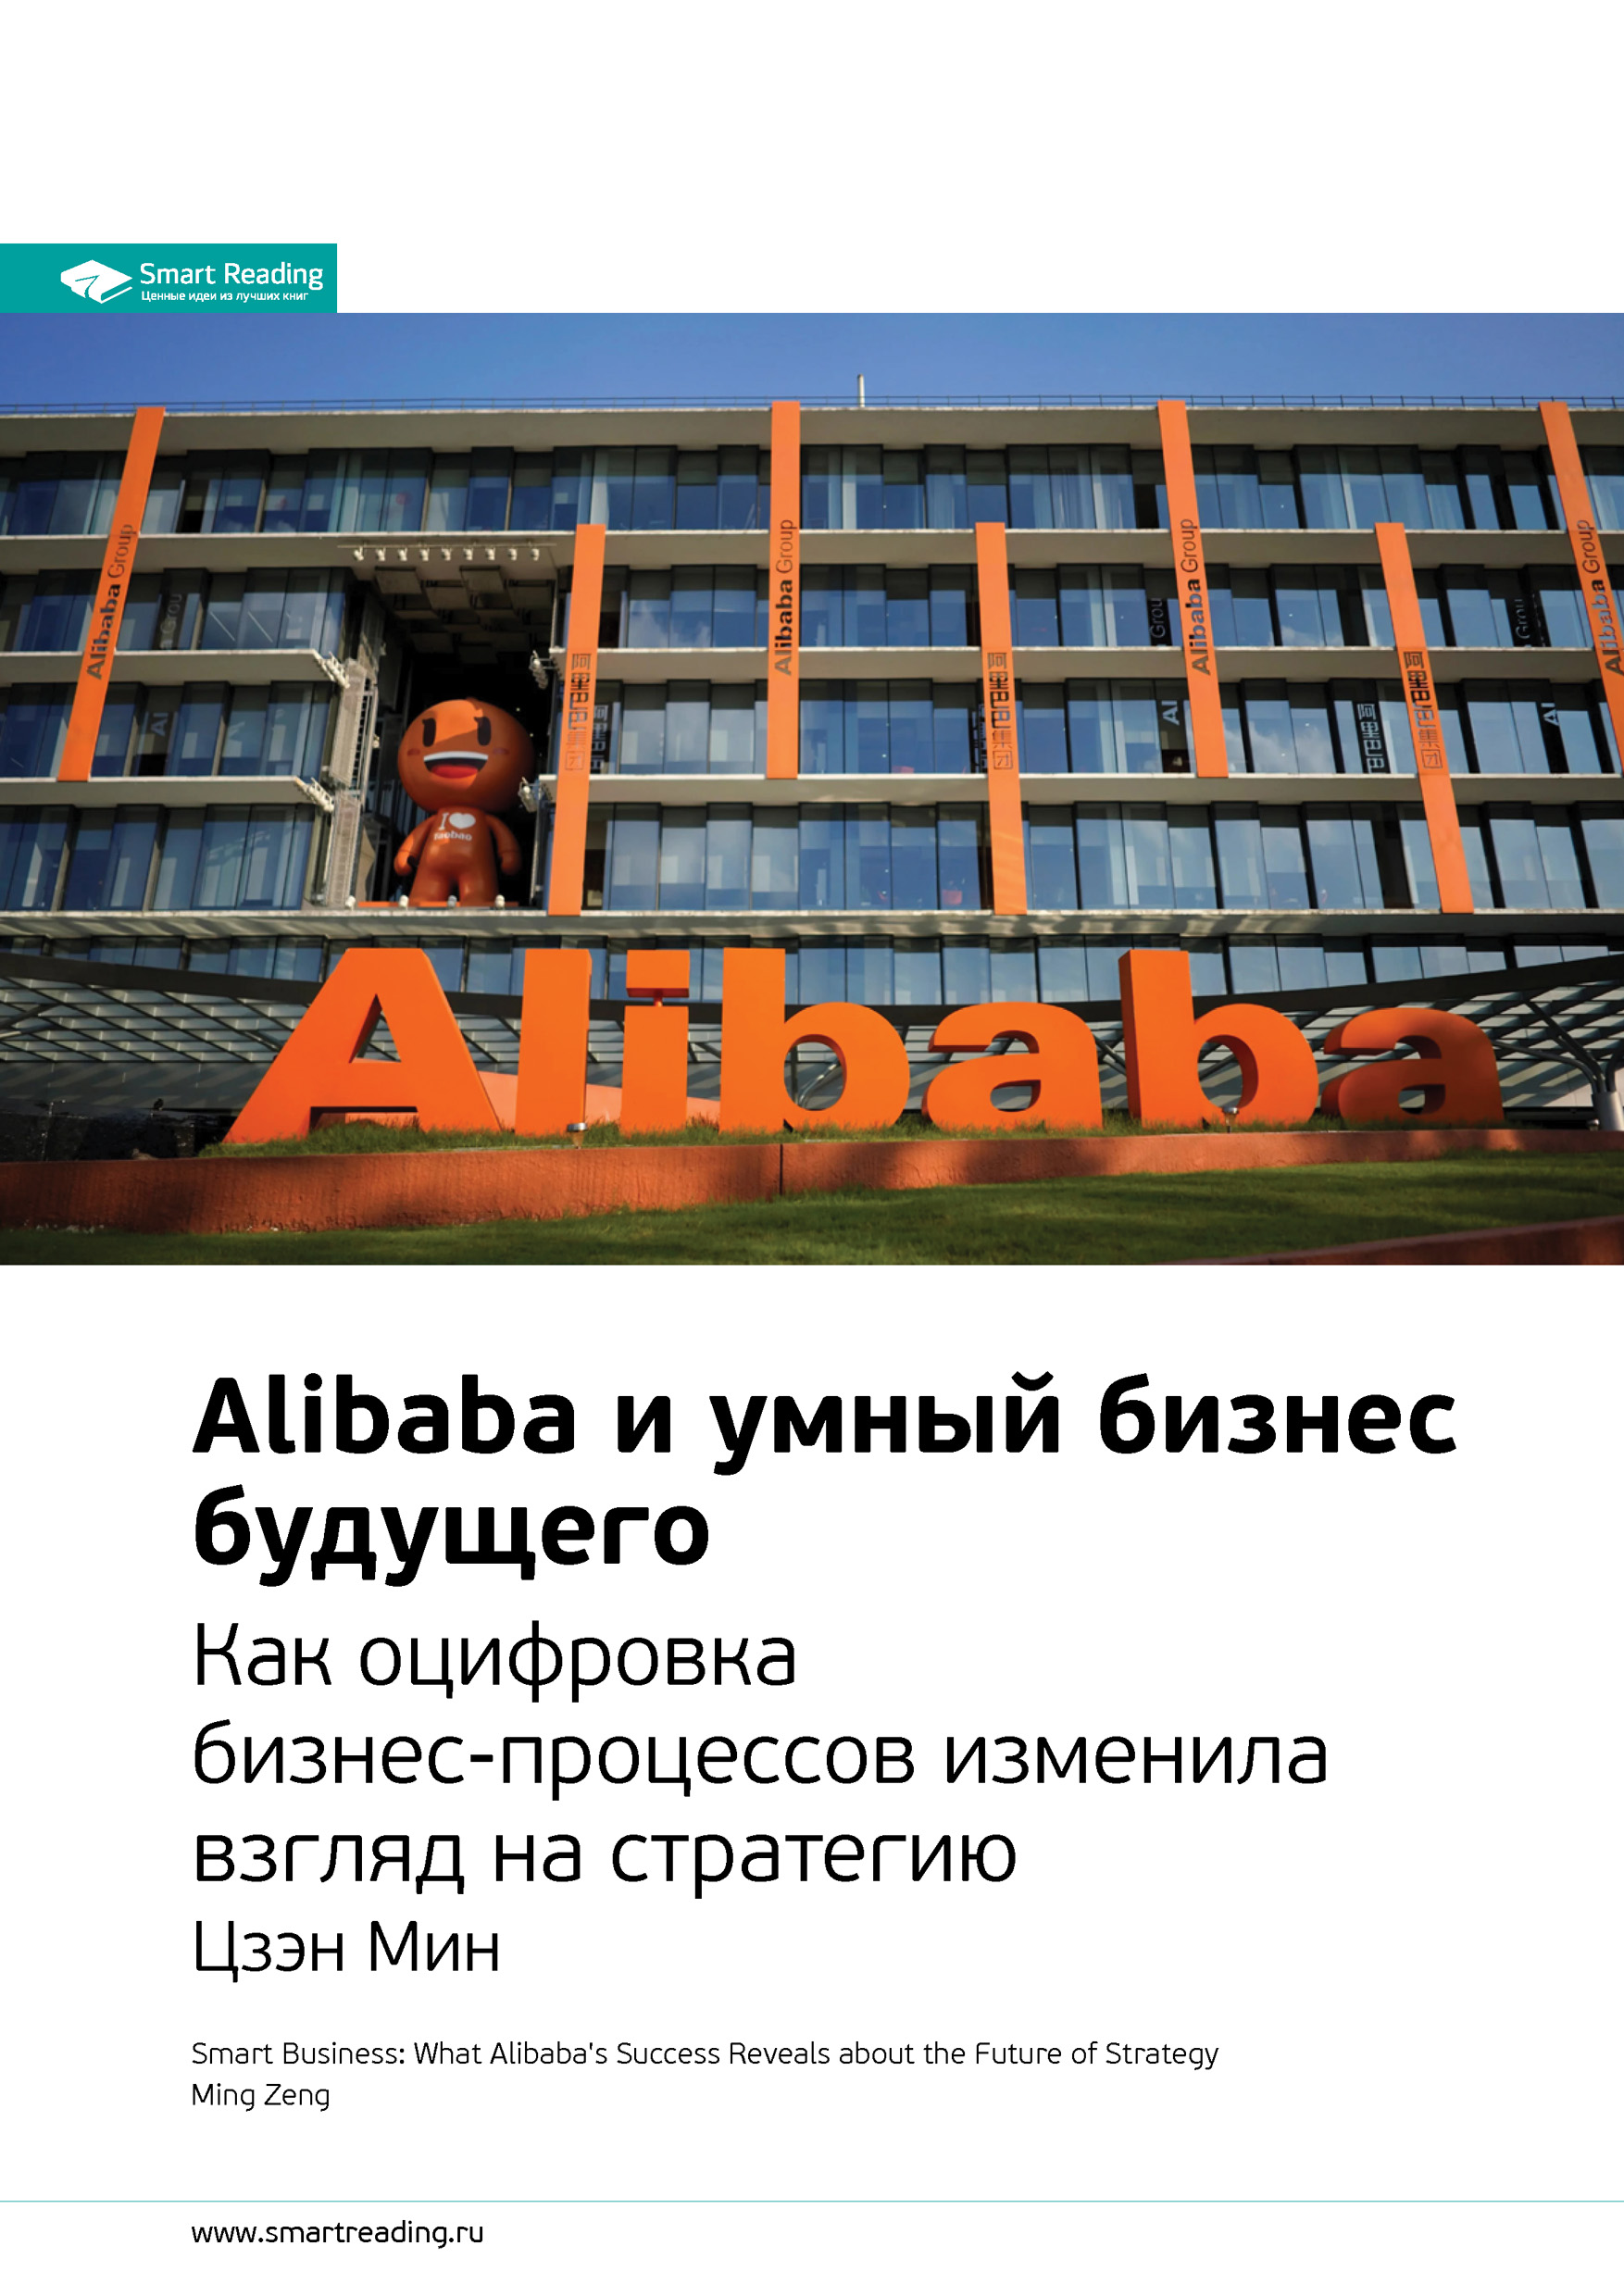 Ключевые идеи книги: Alibaba и умный бизнес будущего. Как оцифровка бизнес-процессов изменила взгляд на стратегию. Цзэн Мин